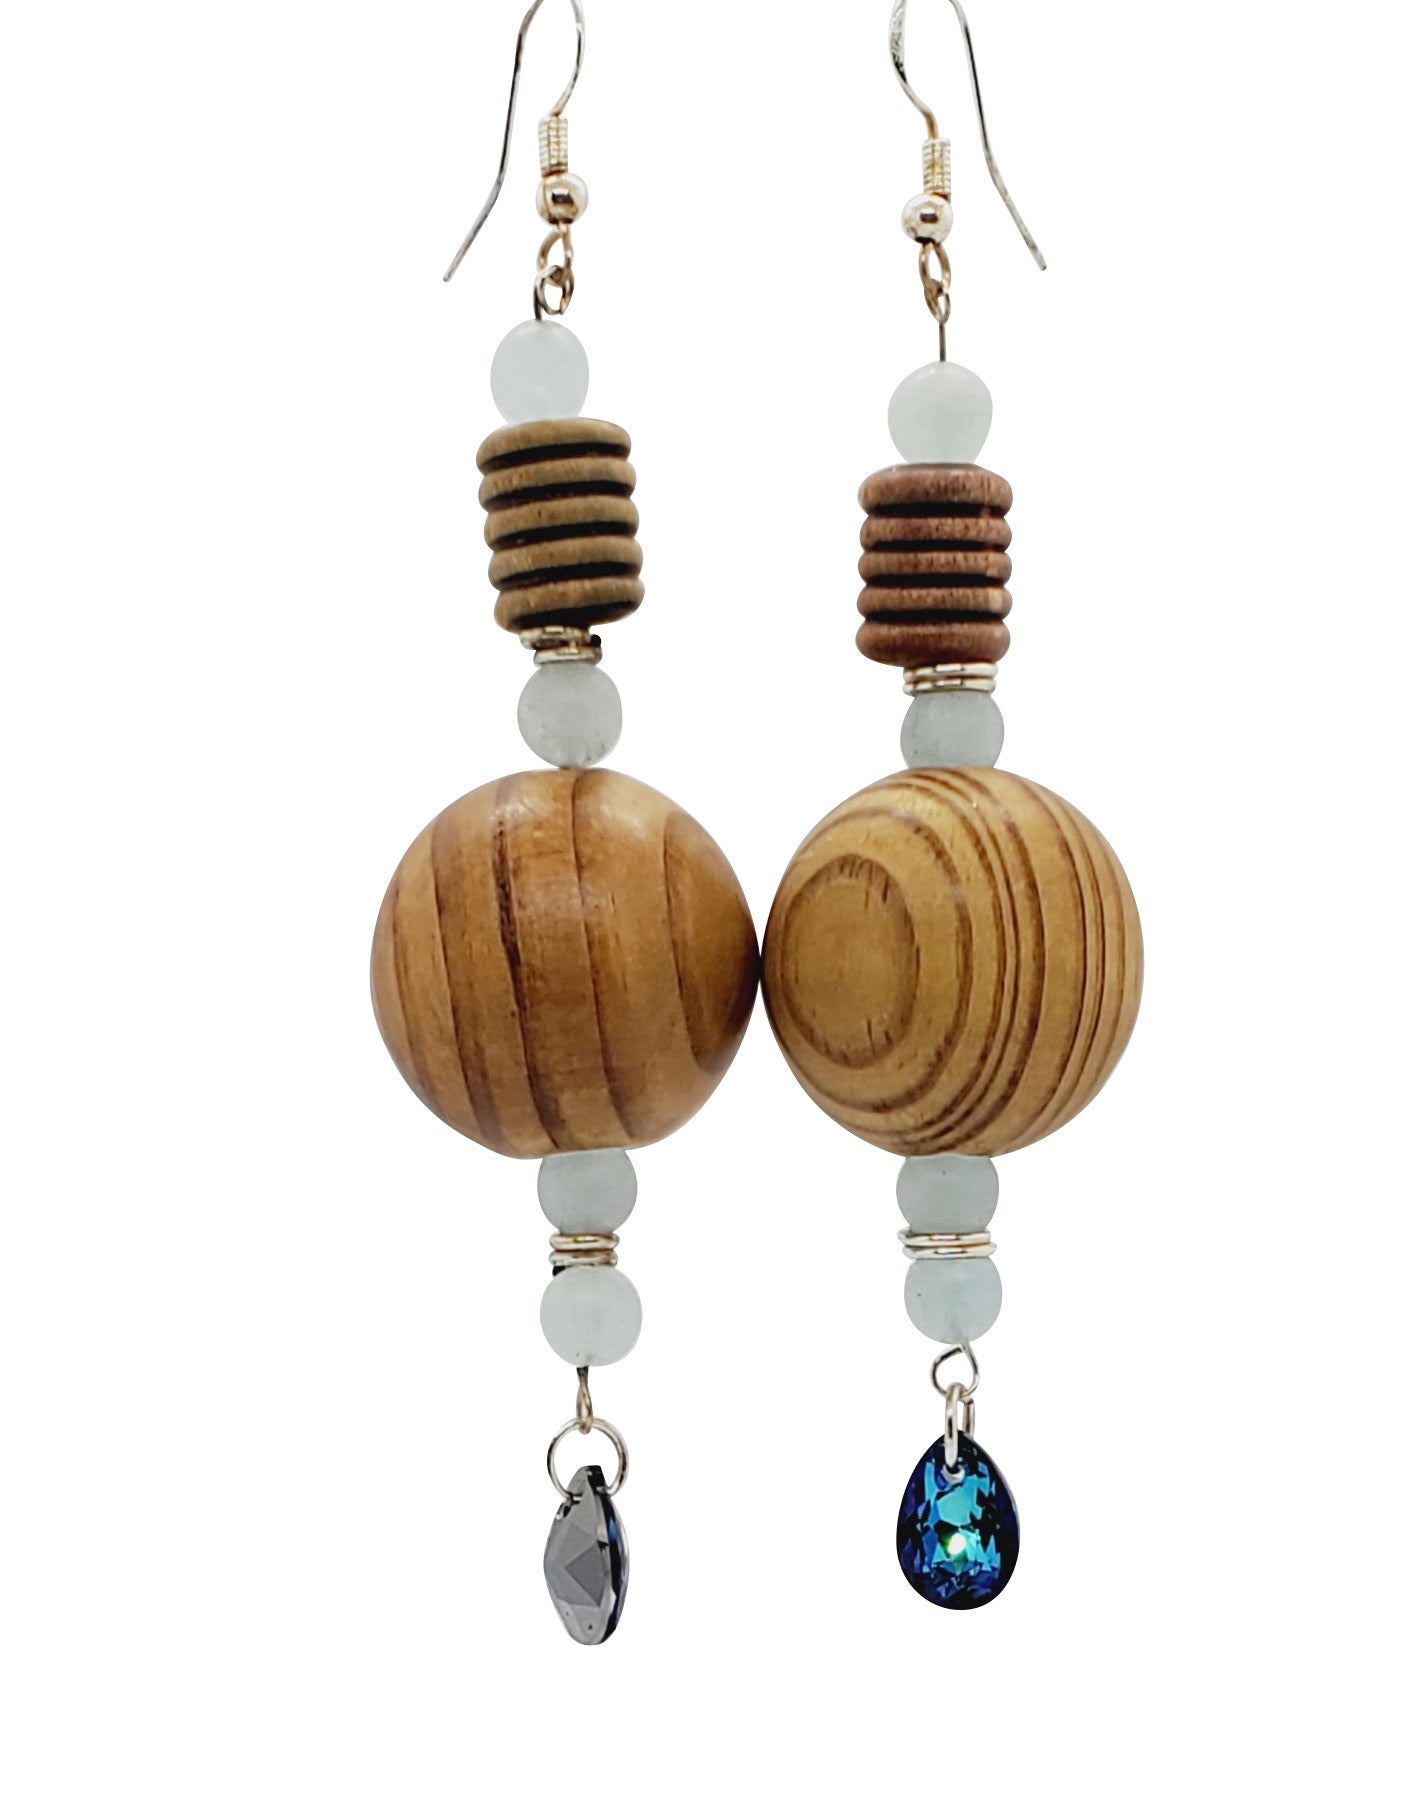 bohemian style earrings, wooden earrings on white background, earring photo, handmade earrings, Nina Wooden Bead Earrings